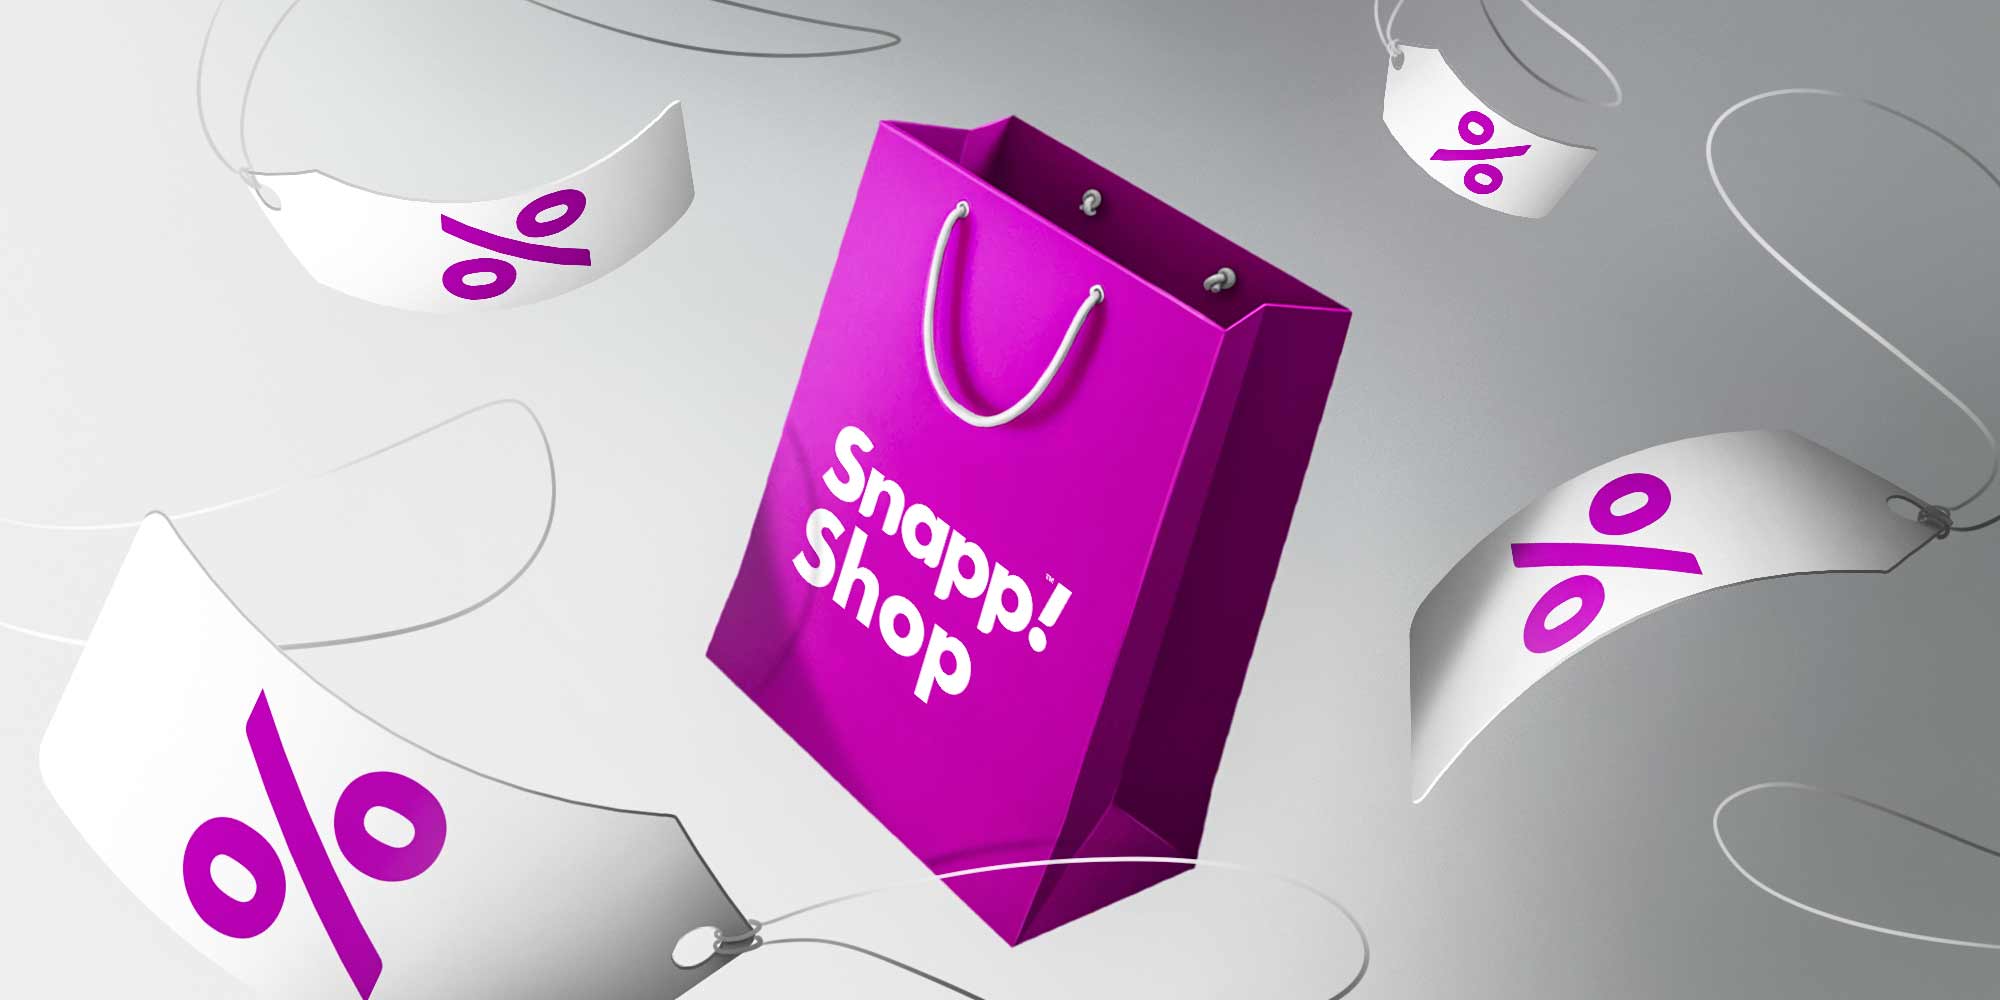 راهنمای خرید از اسنپ شاپ: از محصولات دیجیتال تا لوازم خانگی